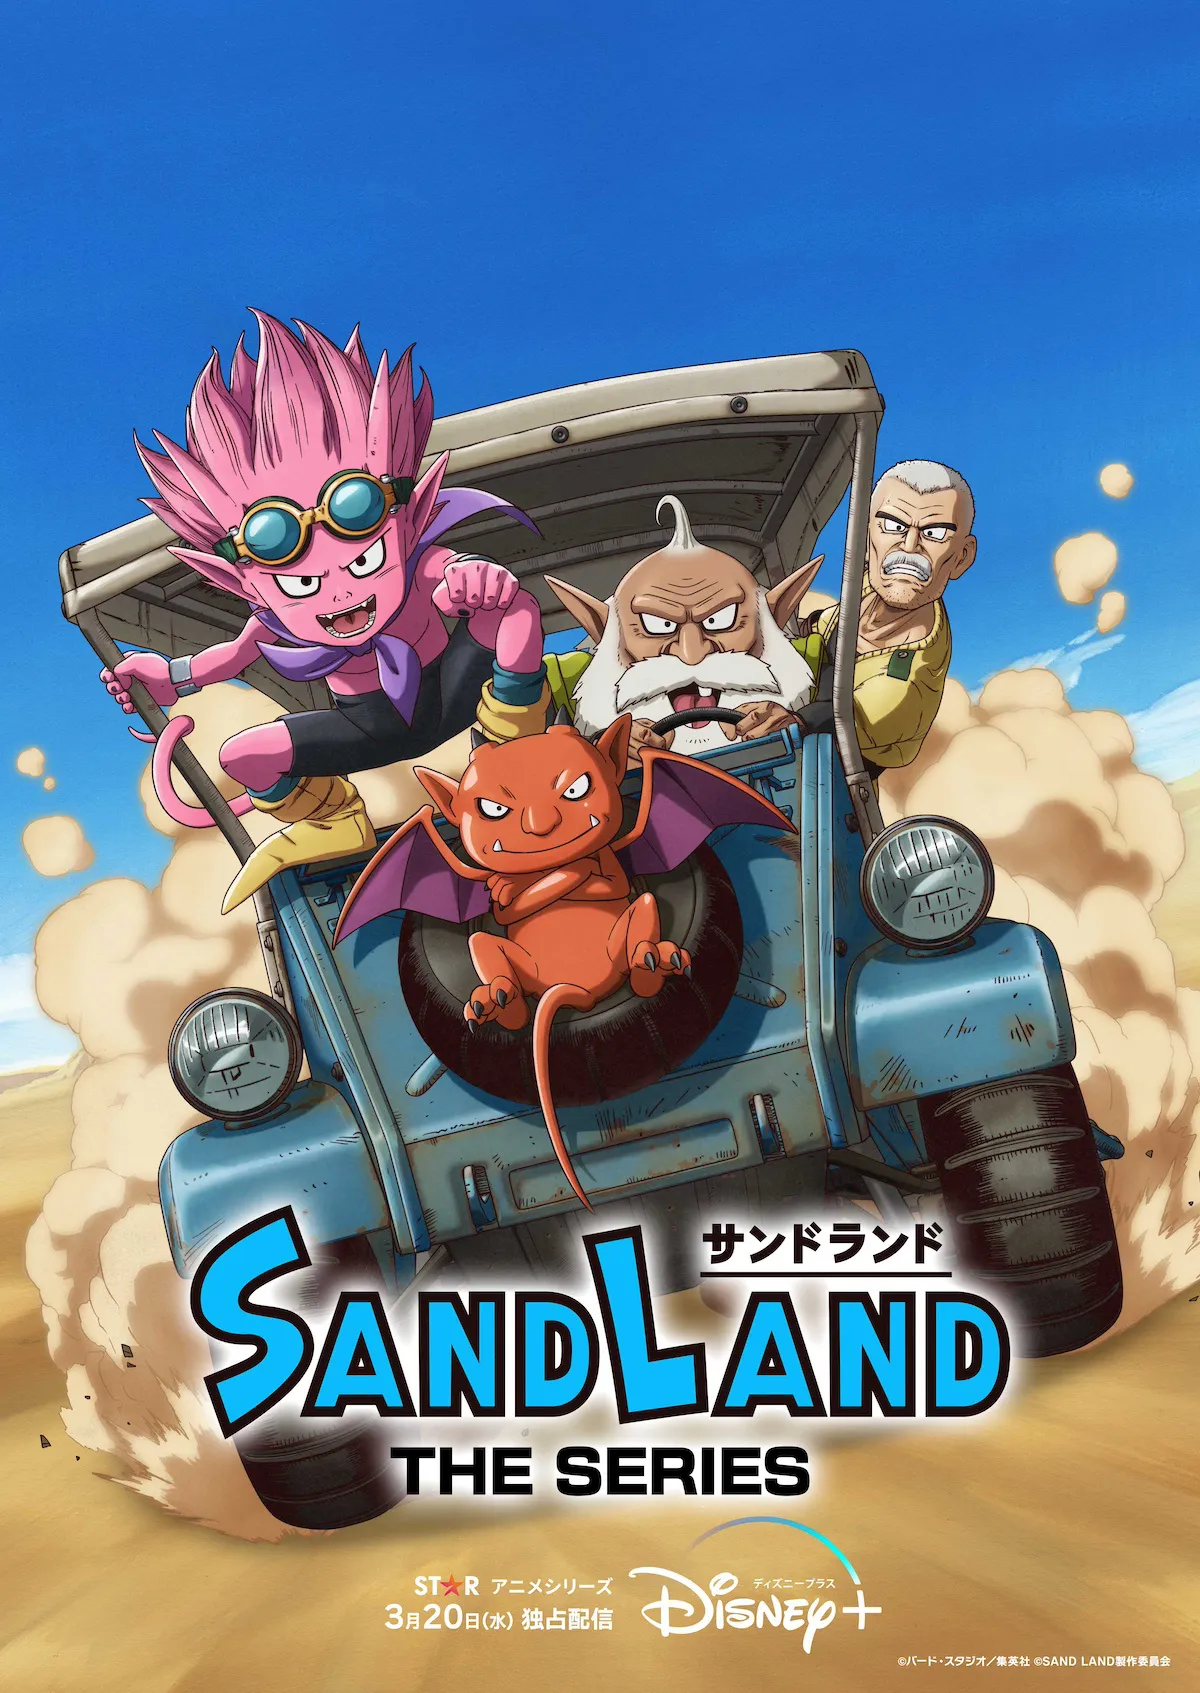 アニメシリーズ「SAND LAND: THE SERIES」のキービジュアル